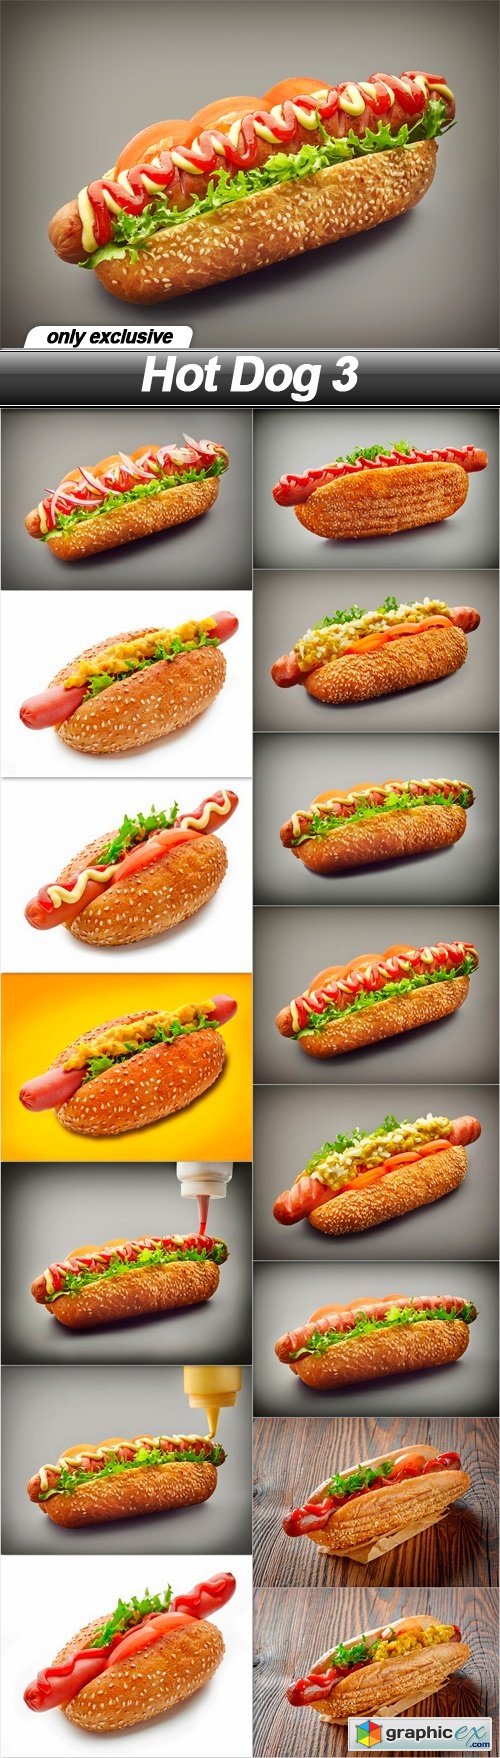 Hot Dog 3 - 15 UHQ JPEG